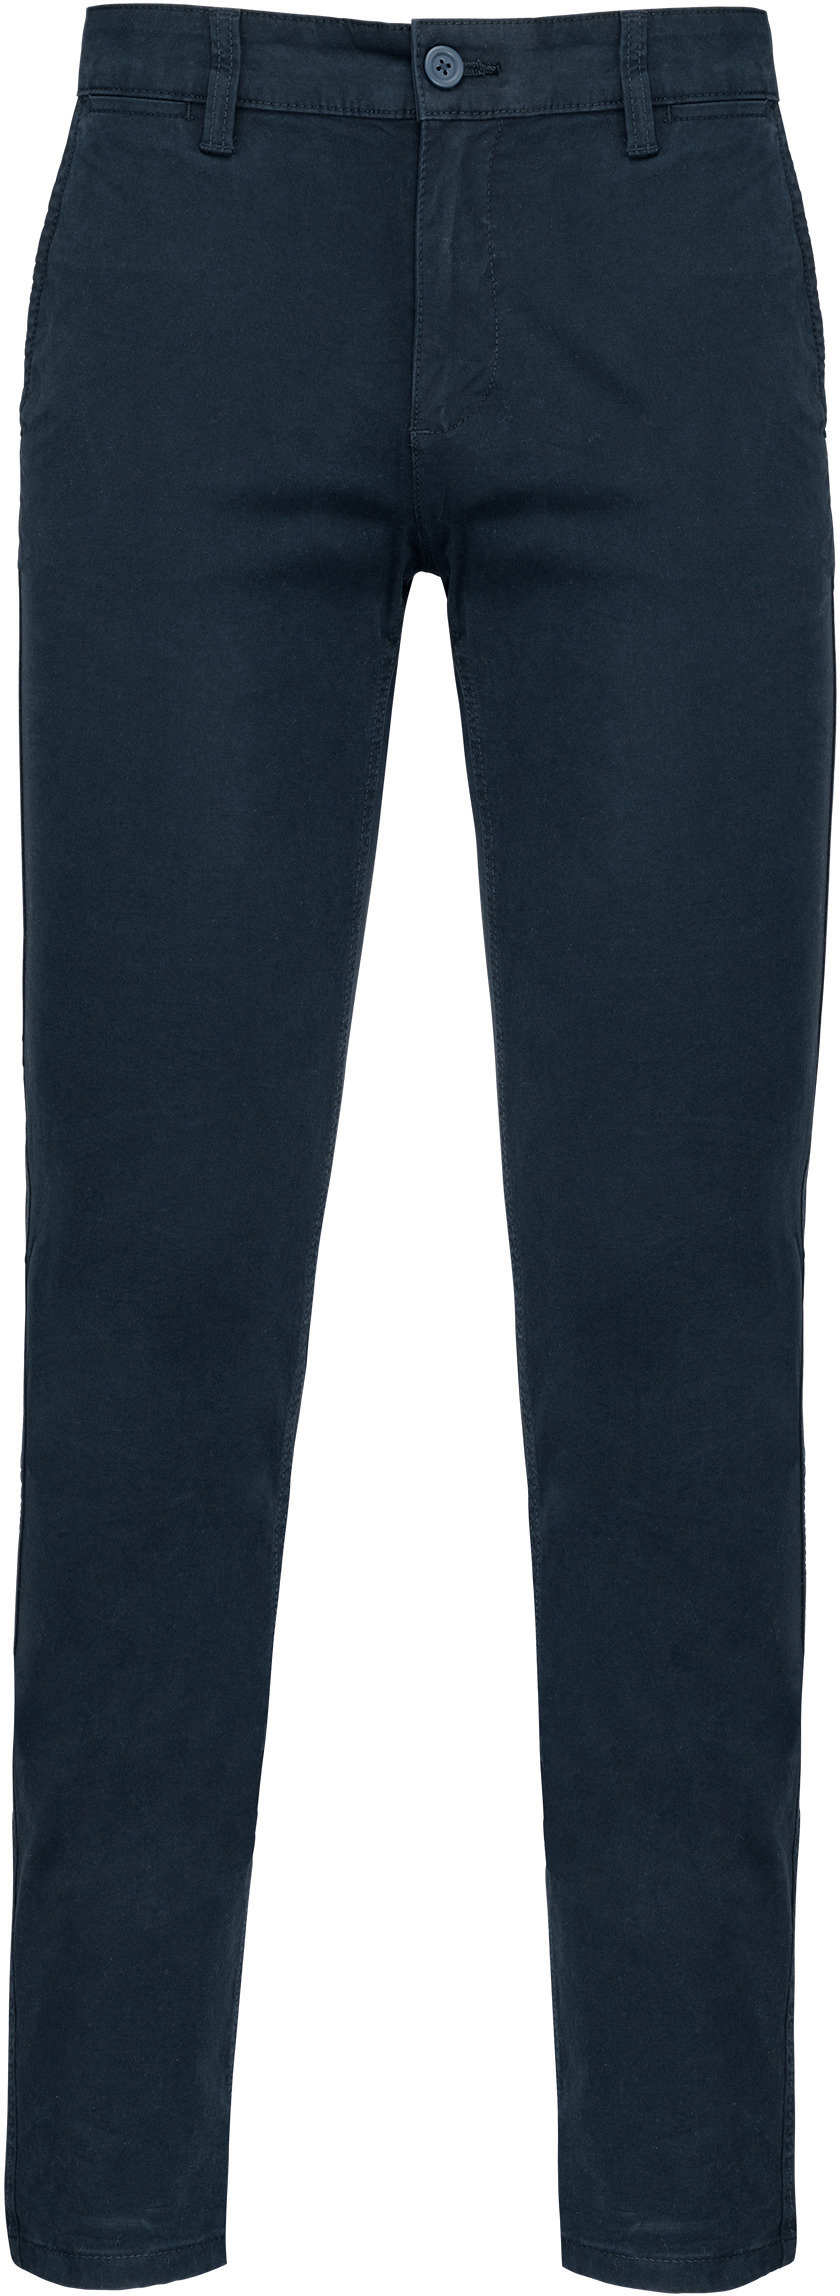 Pánské kalhoty CHINO Barva: dark navy, Velikost: 42